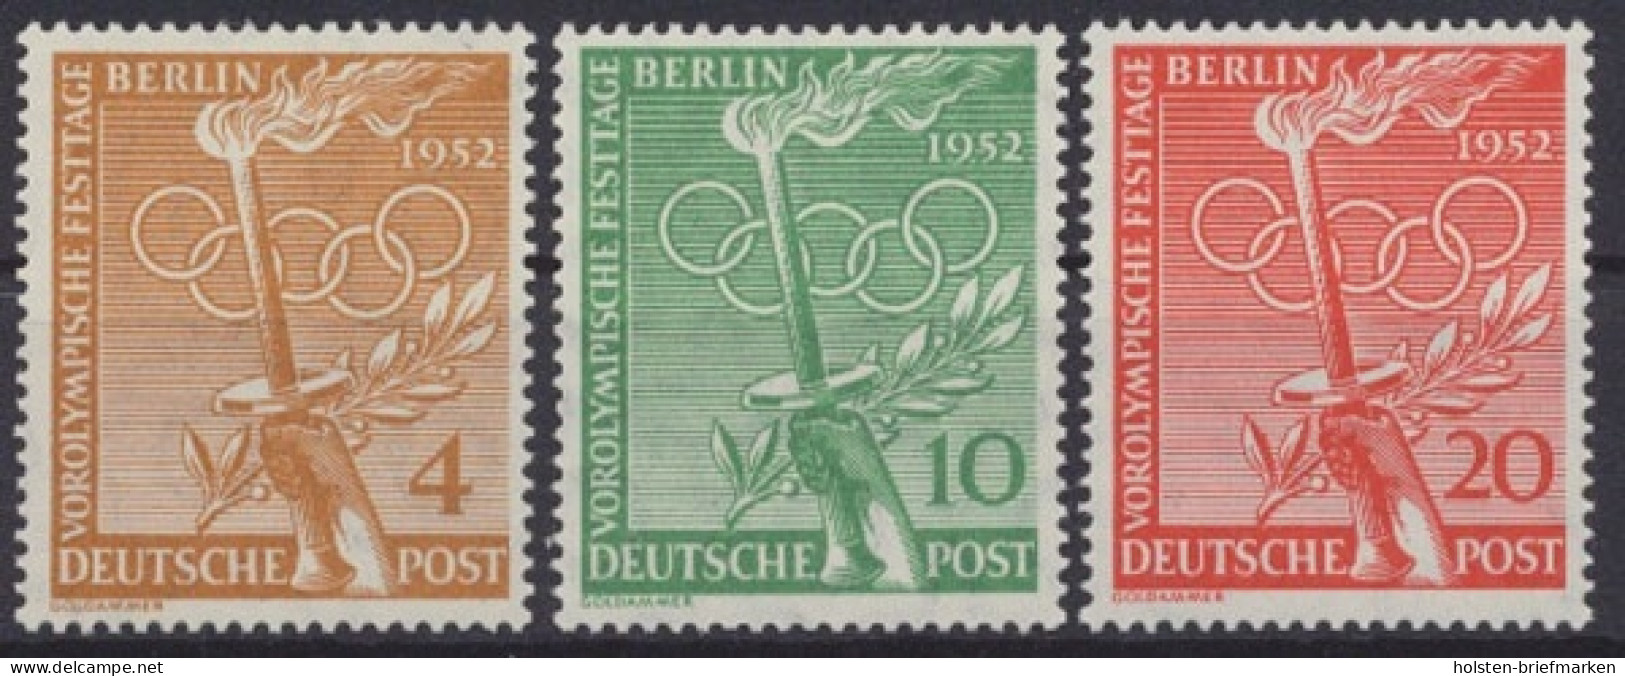 Berlin, Michel Nr. 88-90, Postfrisch / MNH - Ungebraucht